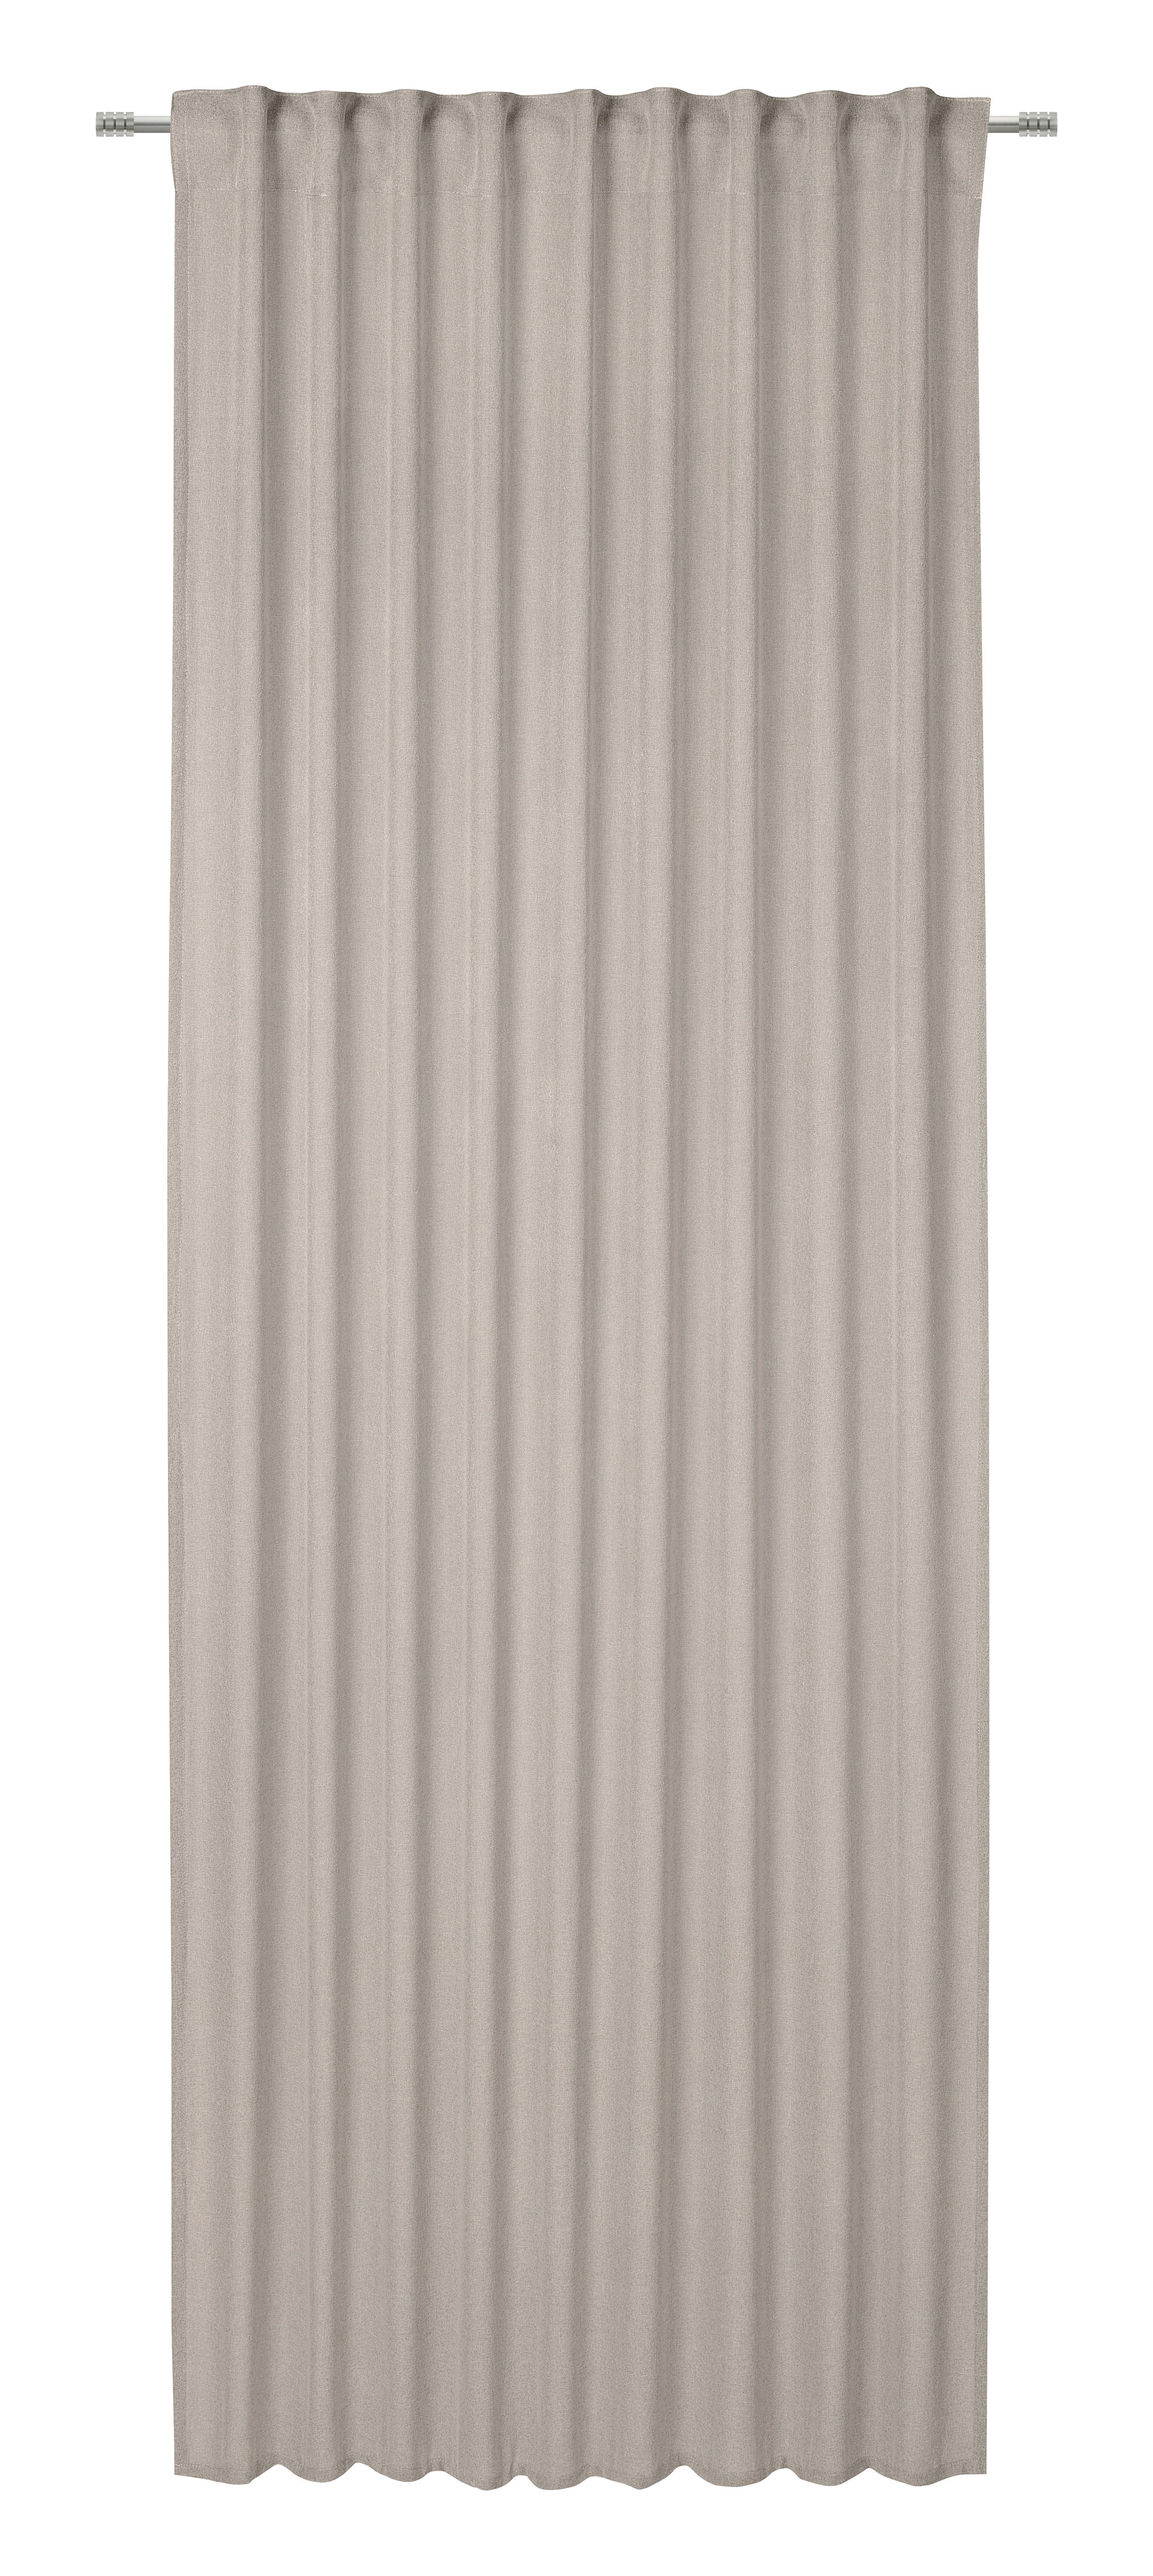 Gotova Zavjesa 135/245cm Ben - sivo-bež, Modern, tekstil (135/245cm) - Modern Living